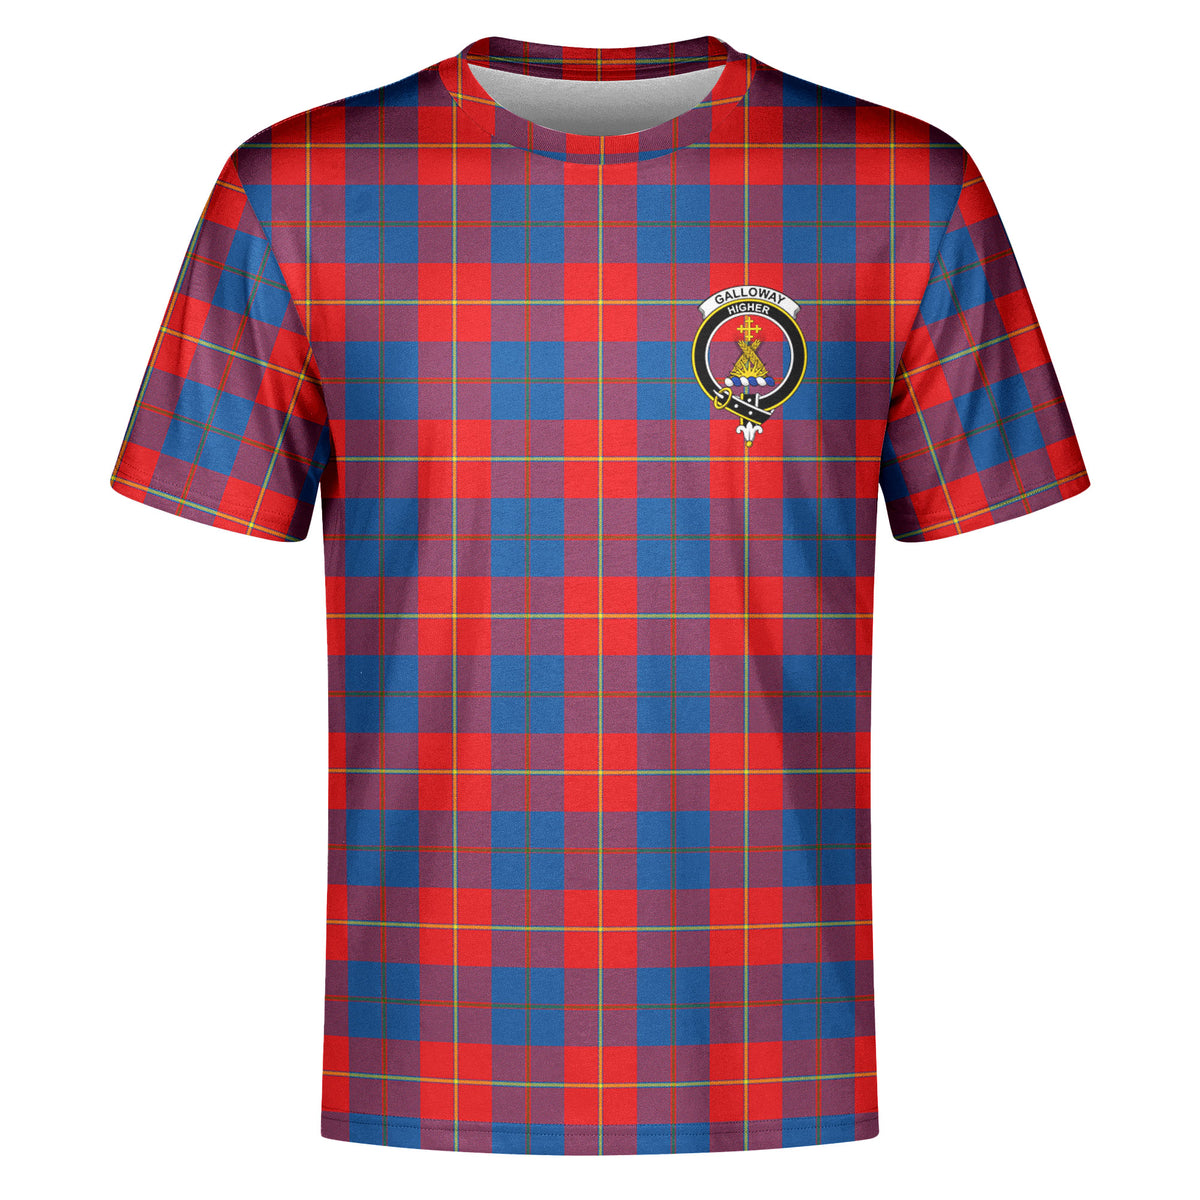 Galloway Red Tartan Crest T-shirt